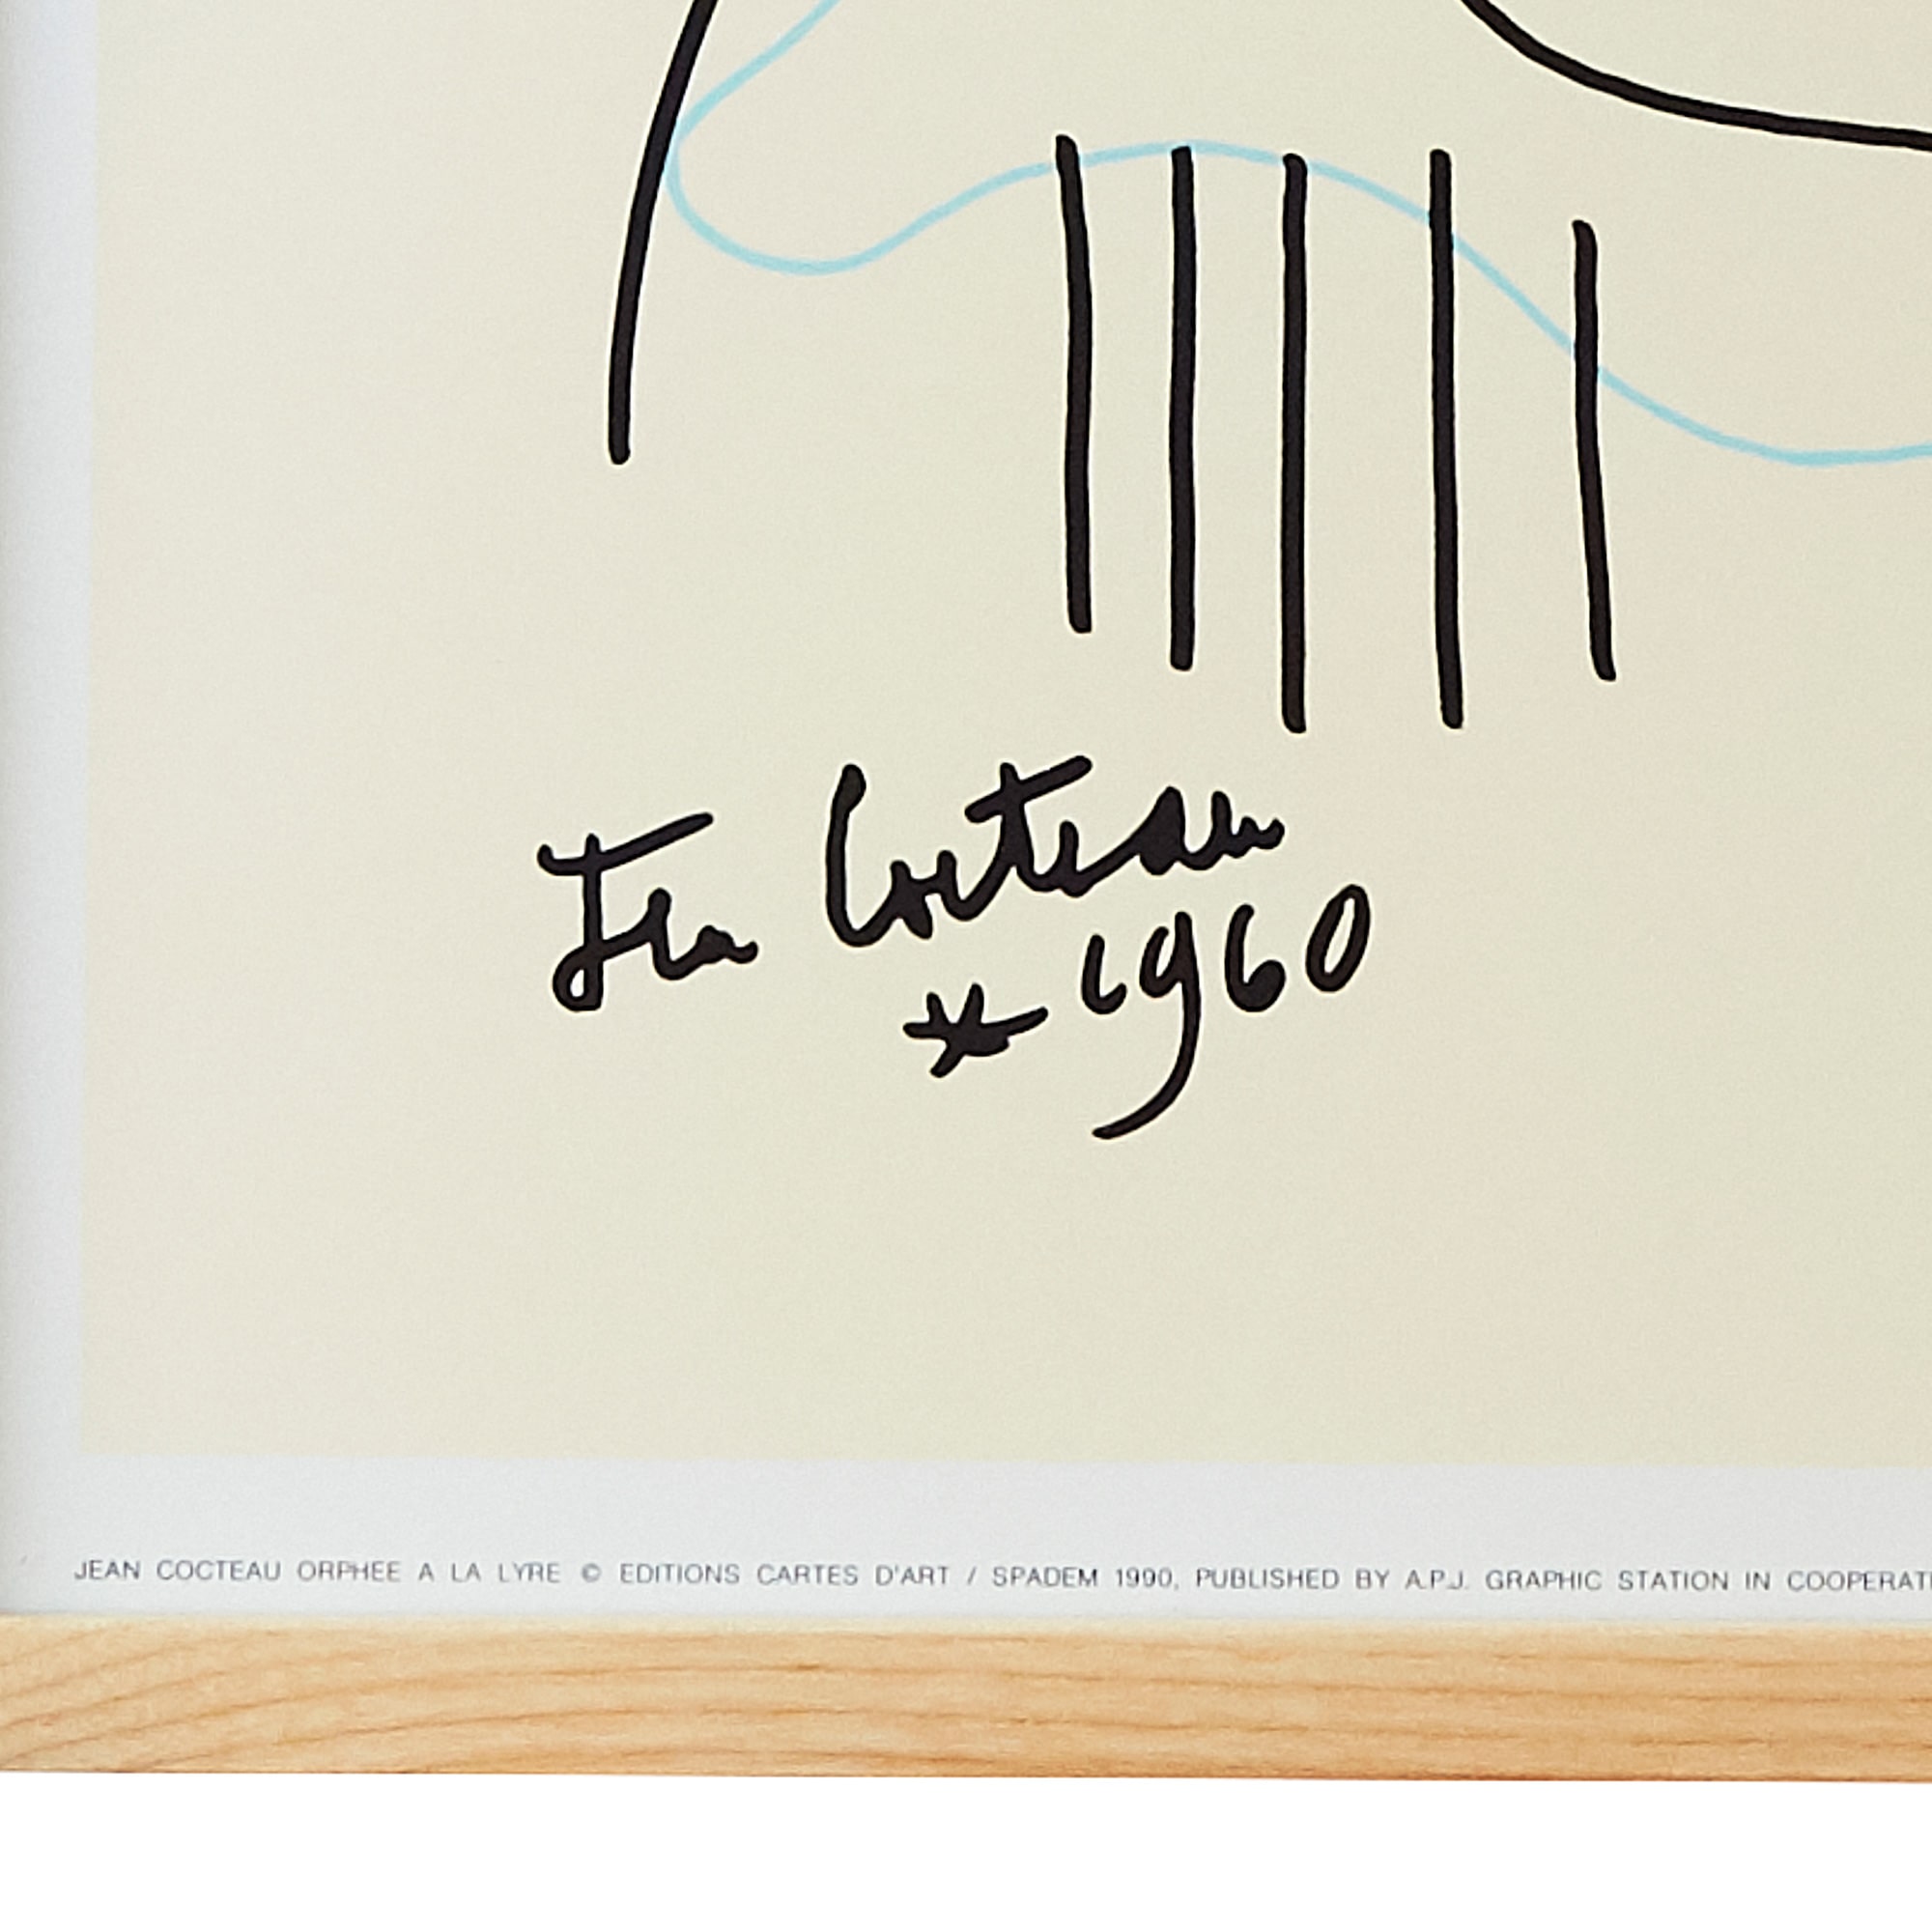 7929円 【ポイント10倍】 絵画 アートポスター ジャンコクトー 世界的スケールの才人